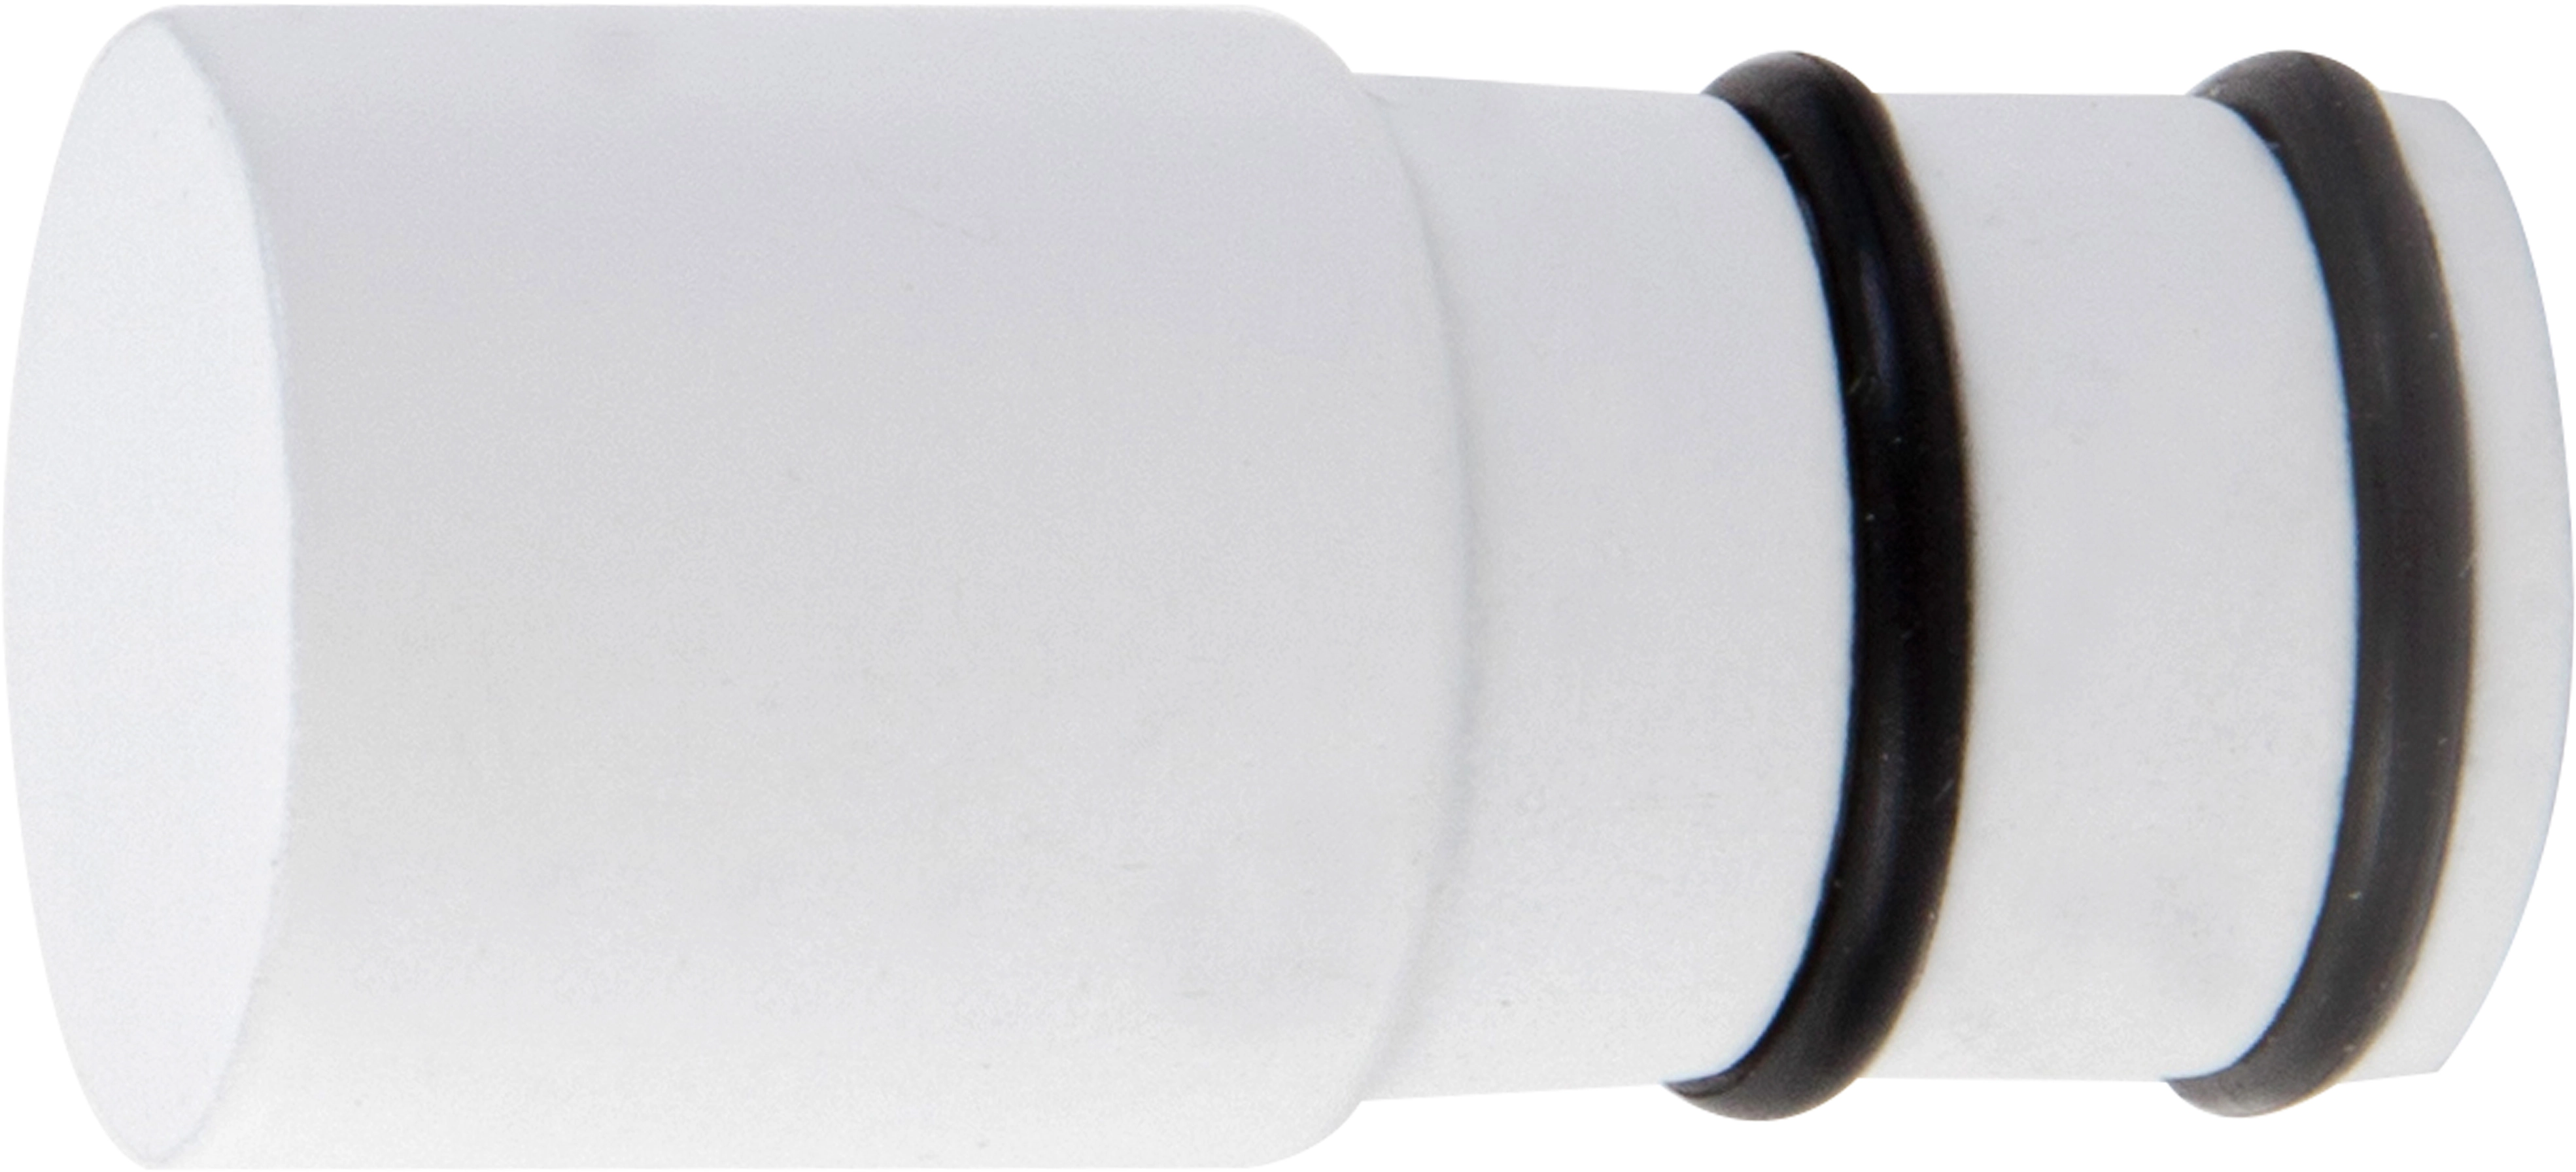 Gardinenstangen-Endstück Zylinderform OBI 19 mm Ø kaufen bei Weiß